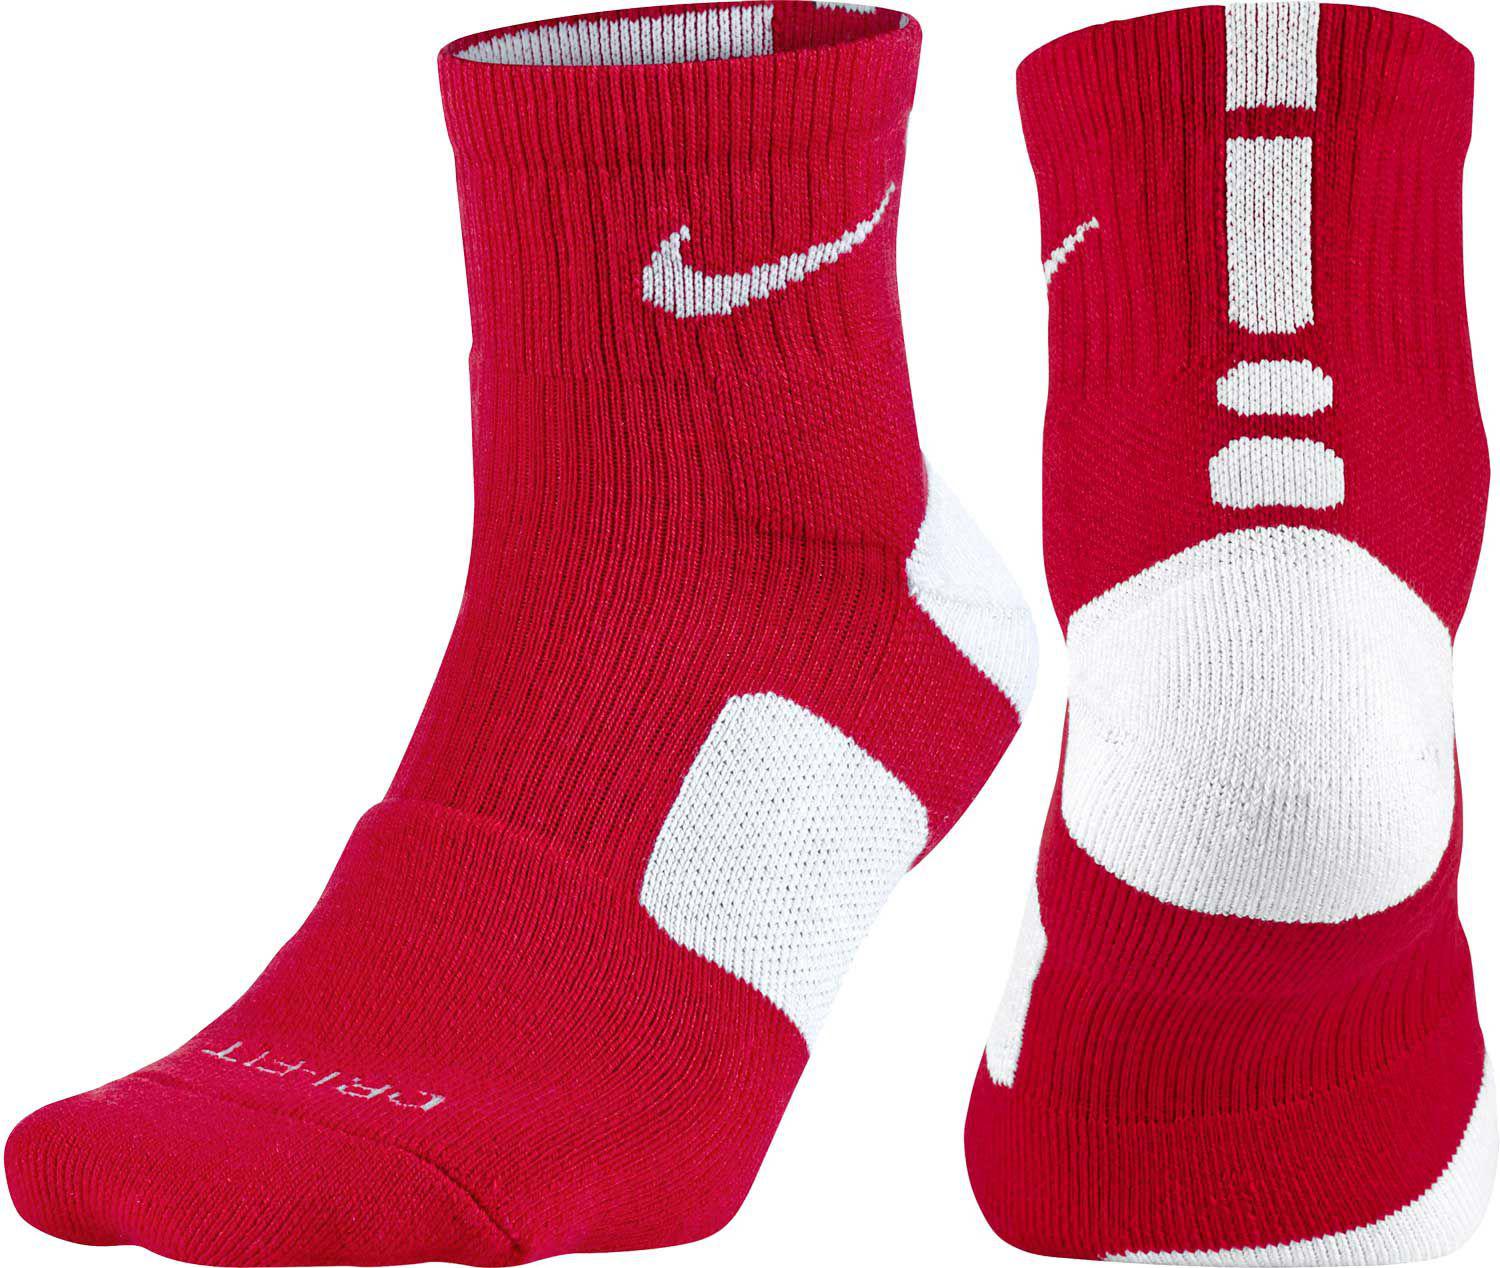 Quarter Basketball Socks 